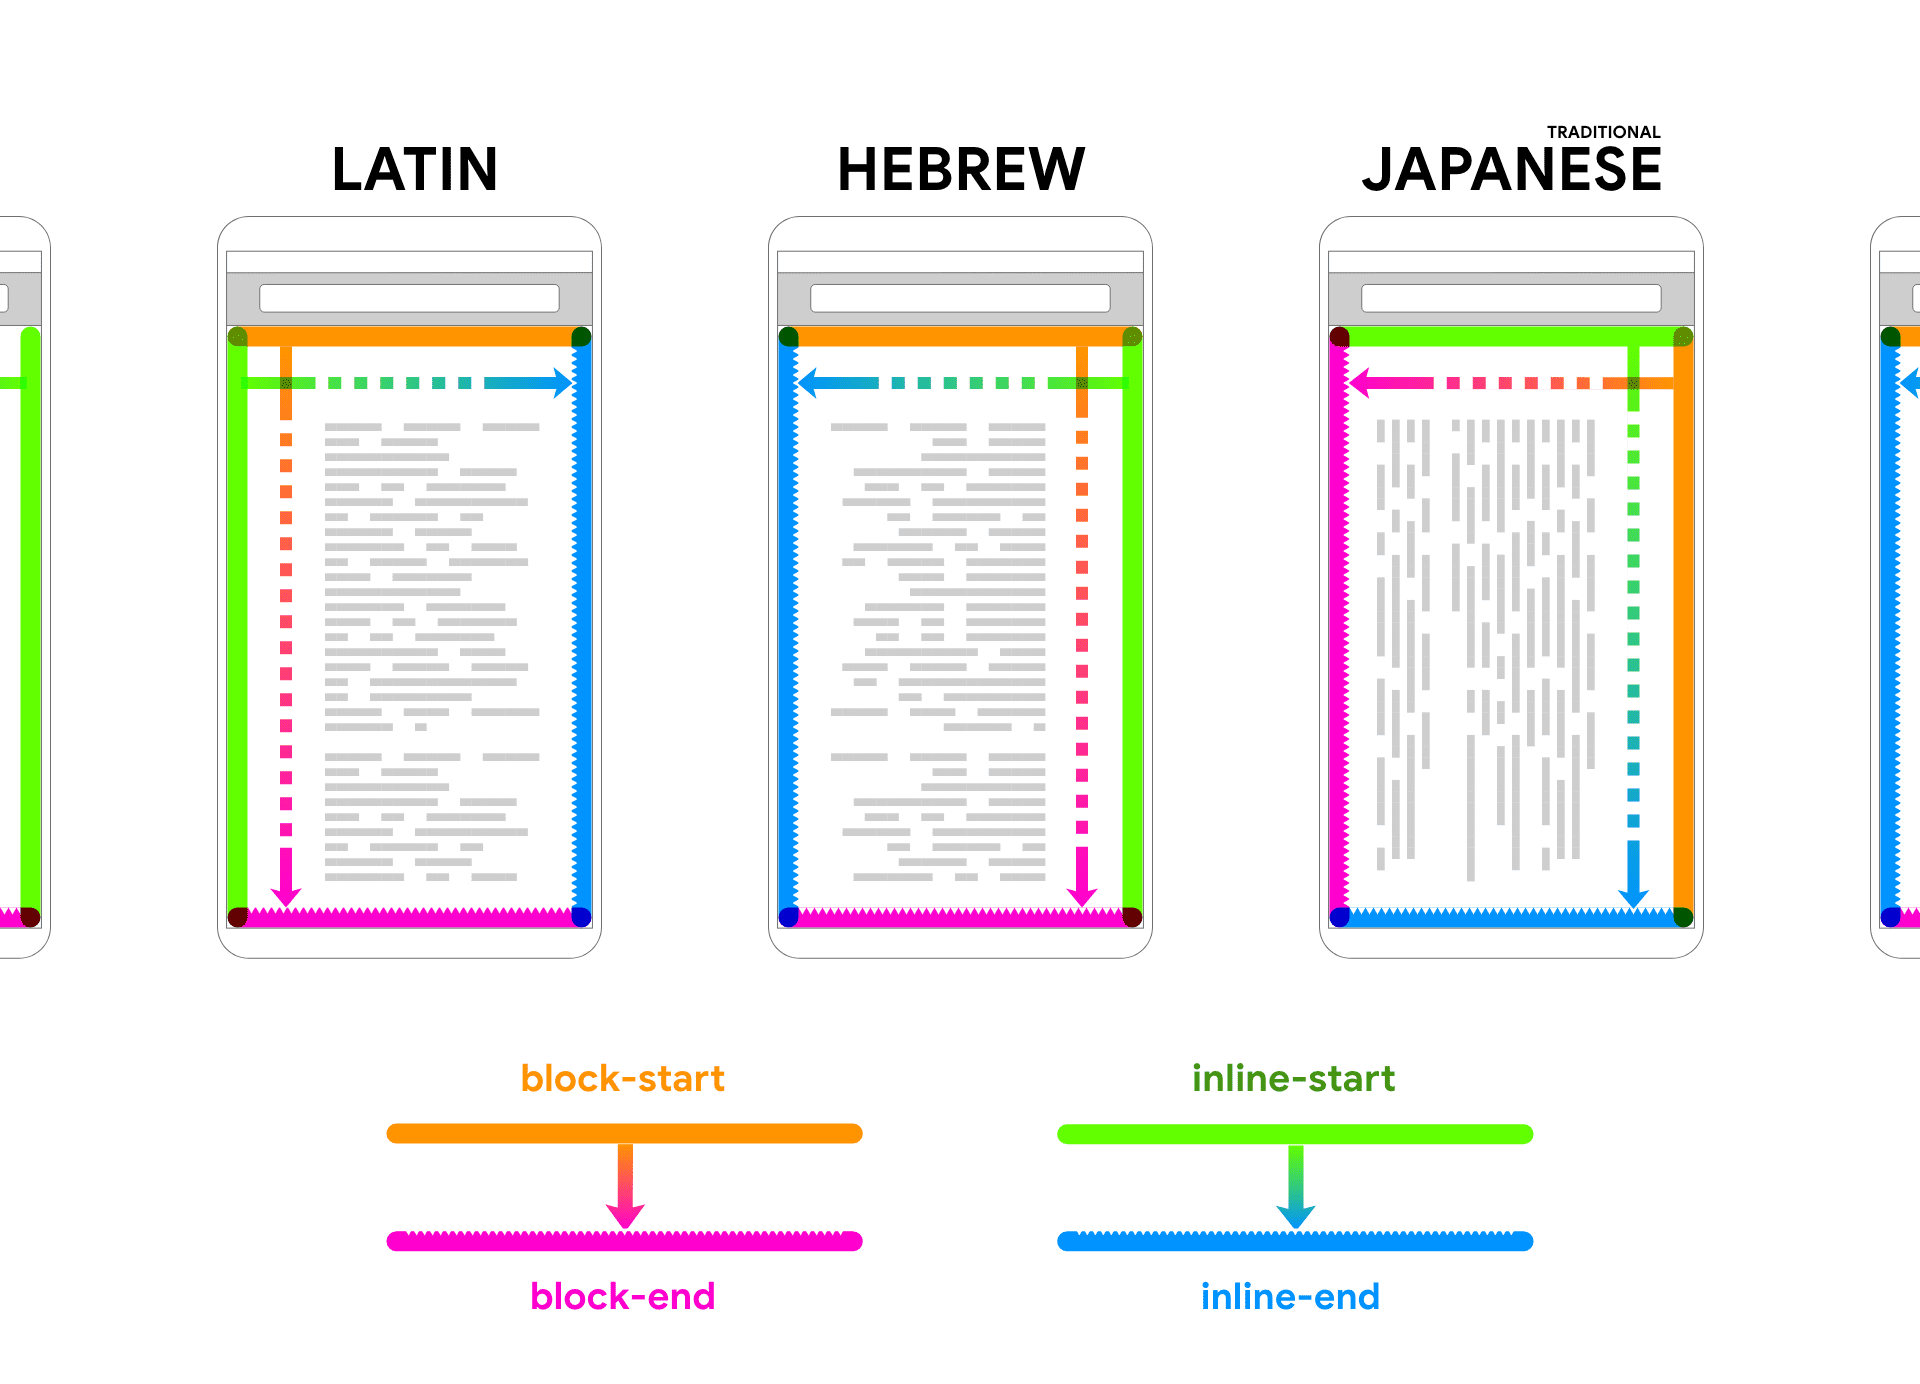 ภาษาละติน ฮีบรู และญี่ปุ่นจะแสดงข้อความตัวยึดตำแหน่งที่เช่าอยู่ภายในเฟรมอุปกรณ์ ลูกศรและสีตามข้อความเพื่อช่วยเชื่อมโยงทิศทางของบล็อกและข้อความในบรรทัด 2 ทิศทาง